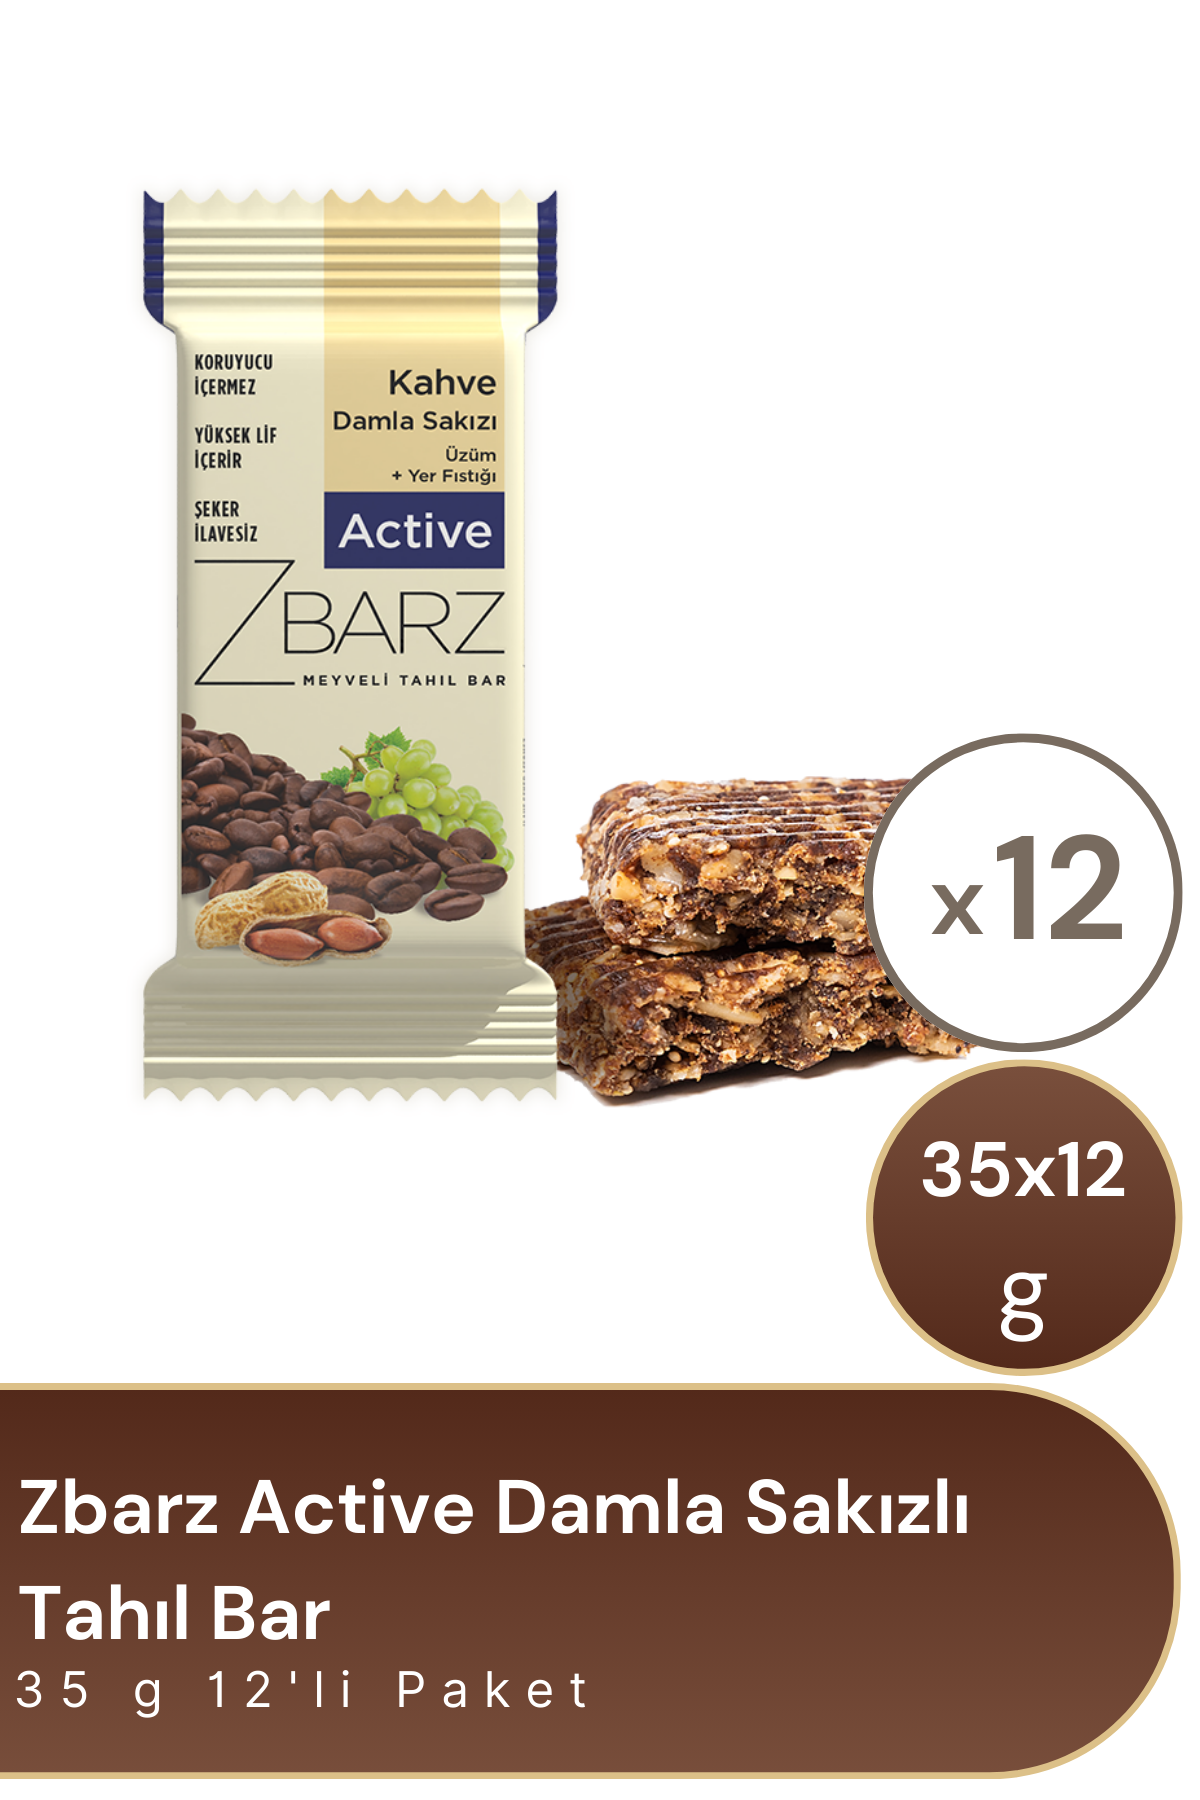 Zbarz Active Damla Sakızlı Tahıl Bar 35 g 12'li Paket